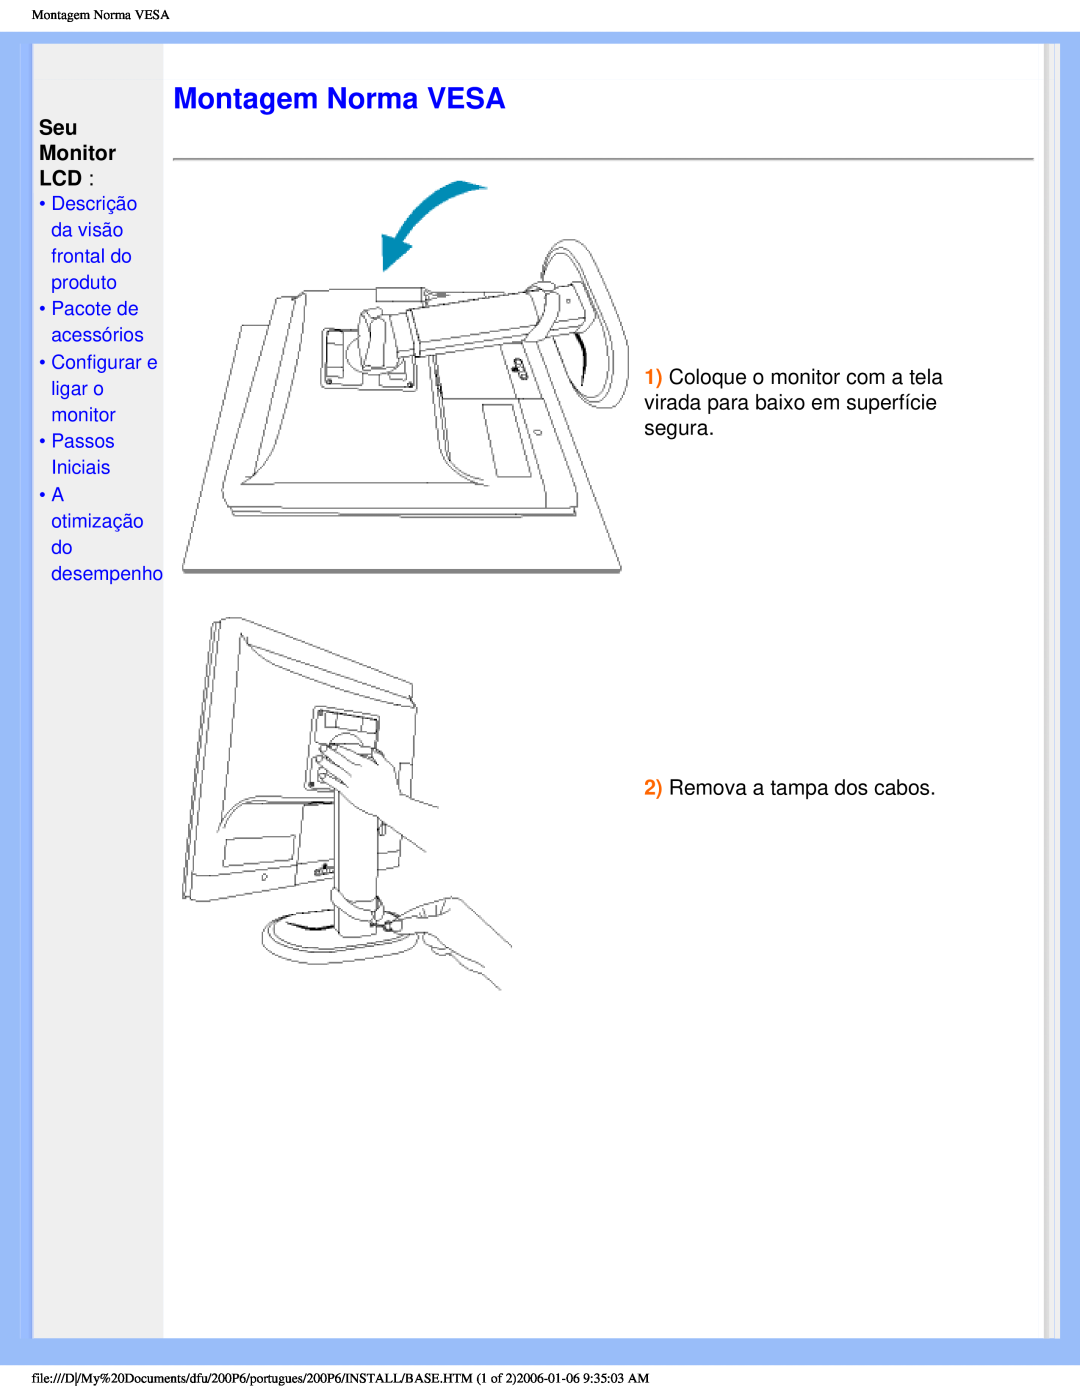 Philips 200P6 user manual Montagem Norma VESA, Seu Monitor LCD, Descrição da visão frontal do produto Pacote de acessórios 